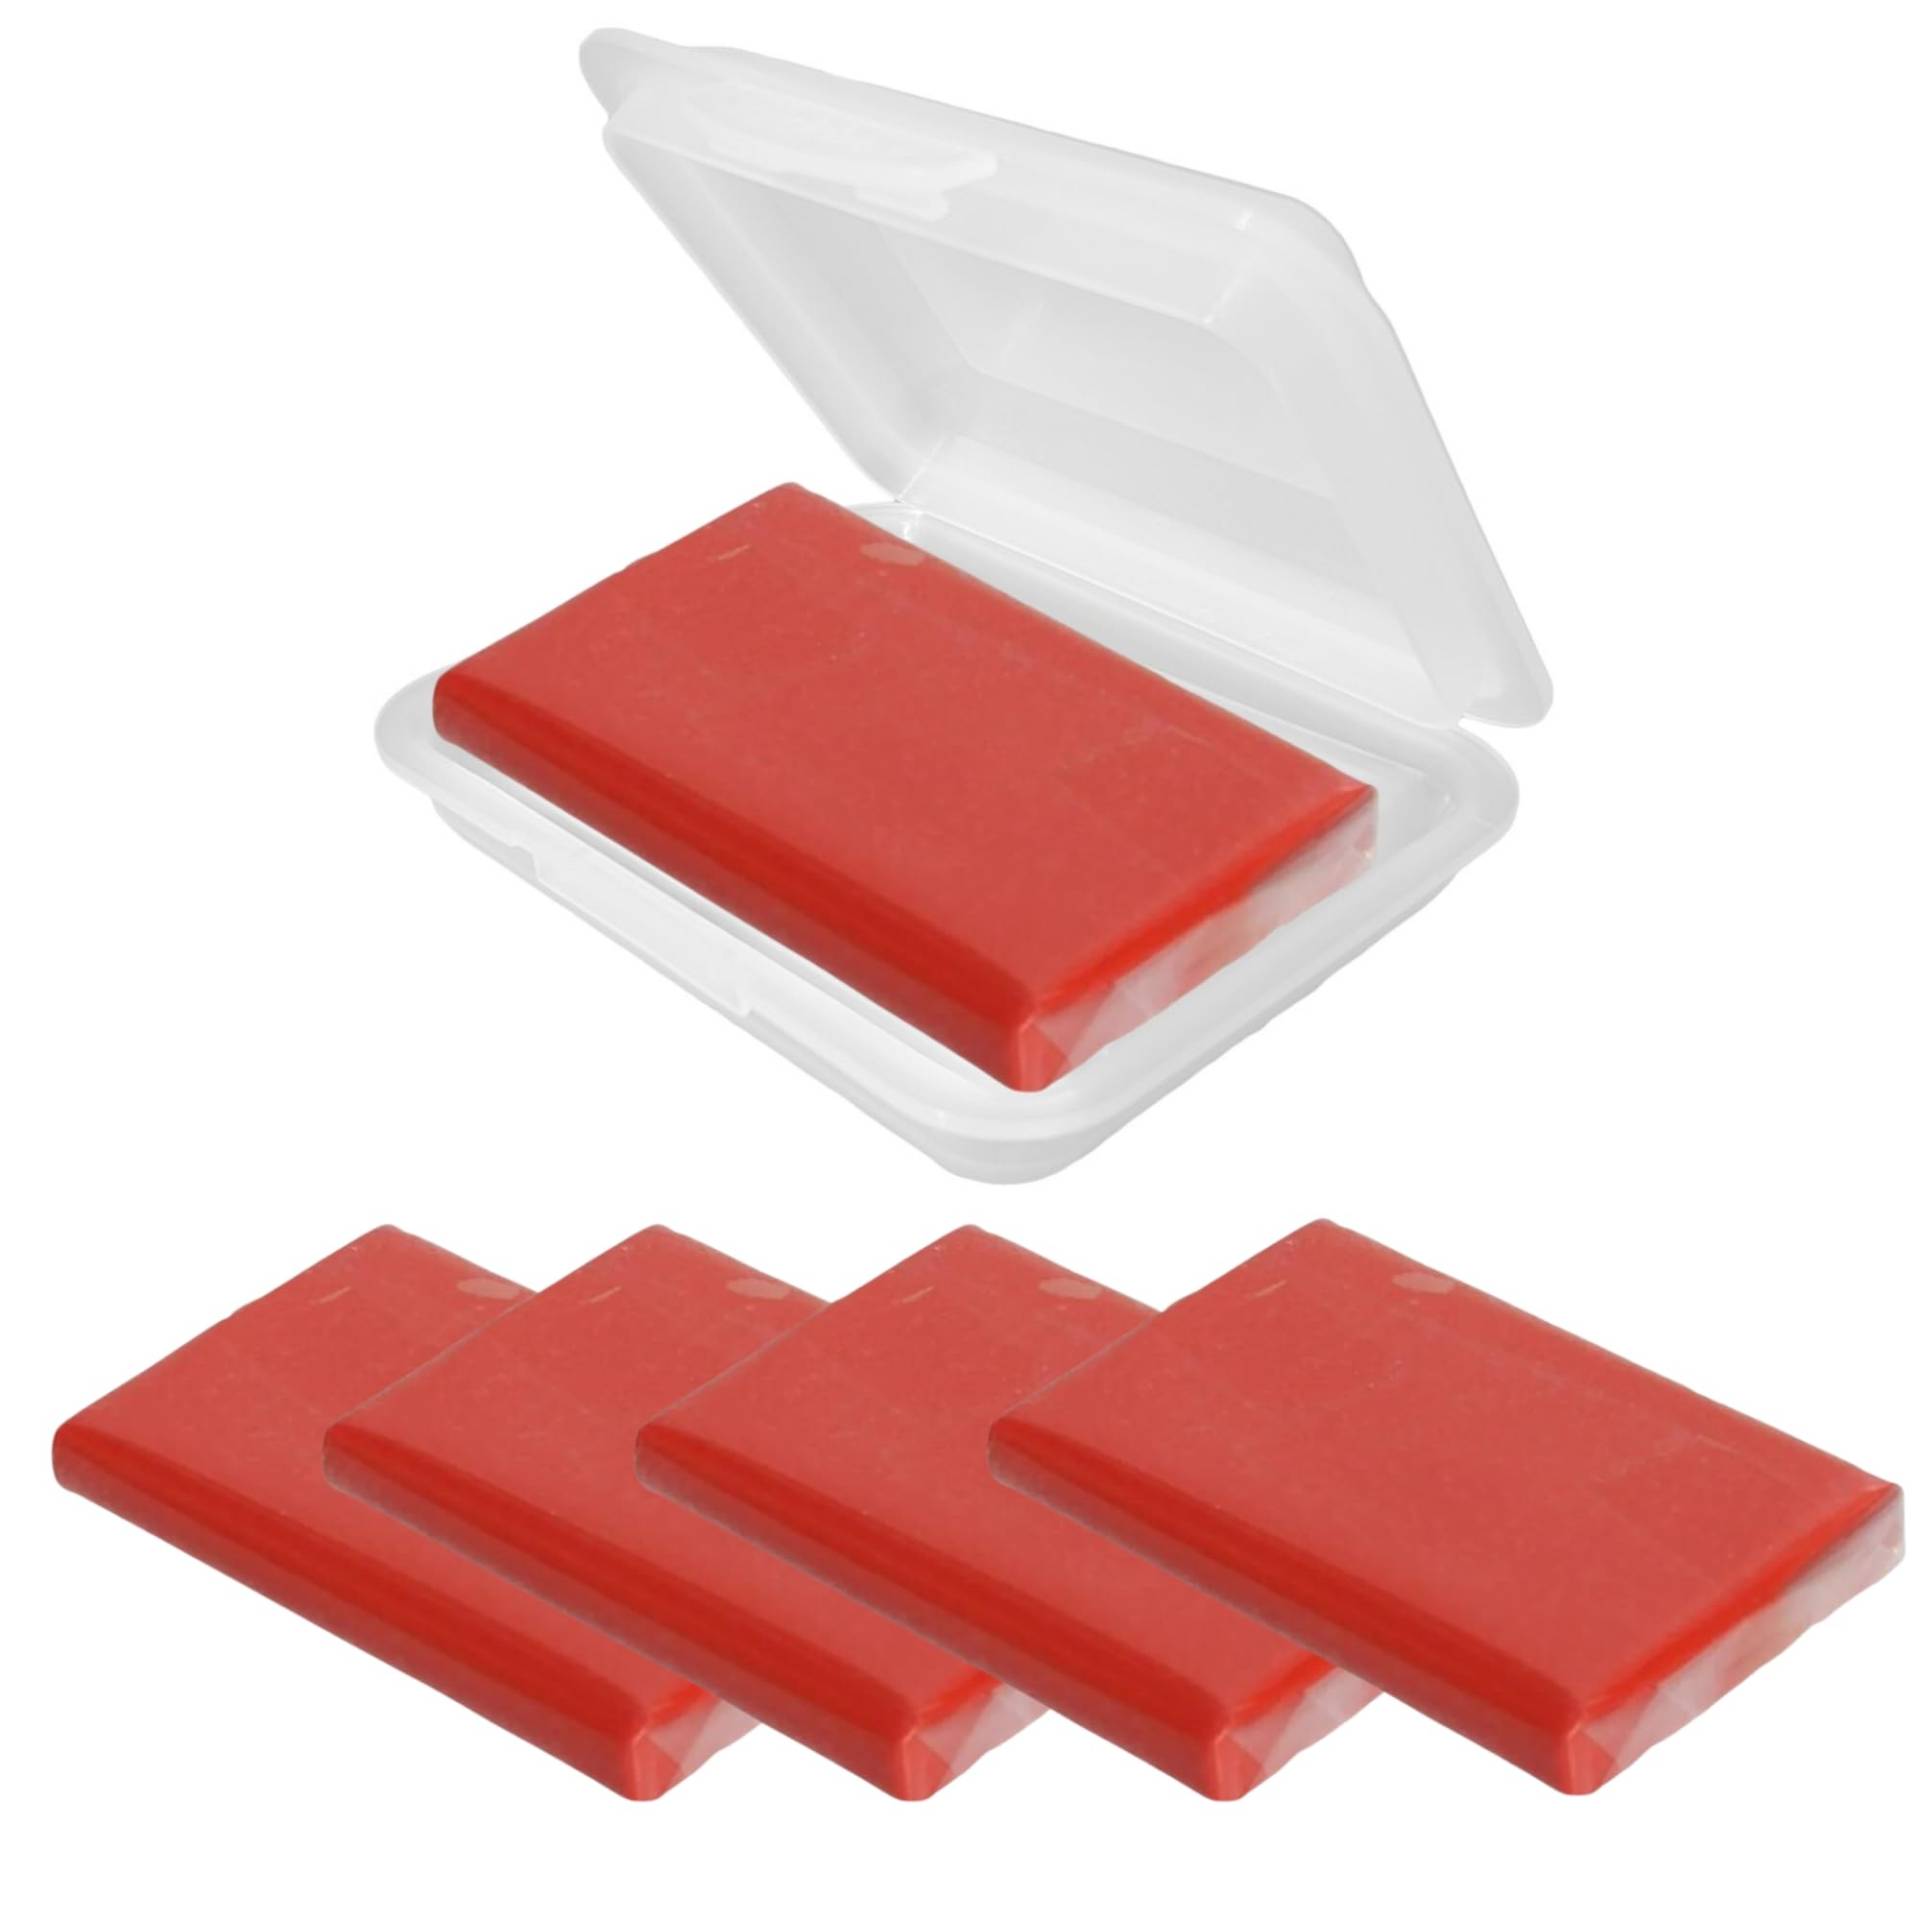 Reinigungsknete Polierknete Lackreinigungsknete Lackreiniger Rot 5 x 100g + 1 Aufbewahrungsbox für Lack für Auto Kfz, Wohnwagen und Wohnmobil (5 x Rot+Box) von Radami